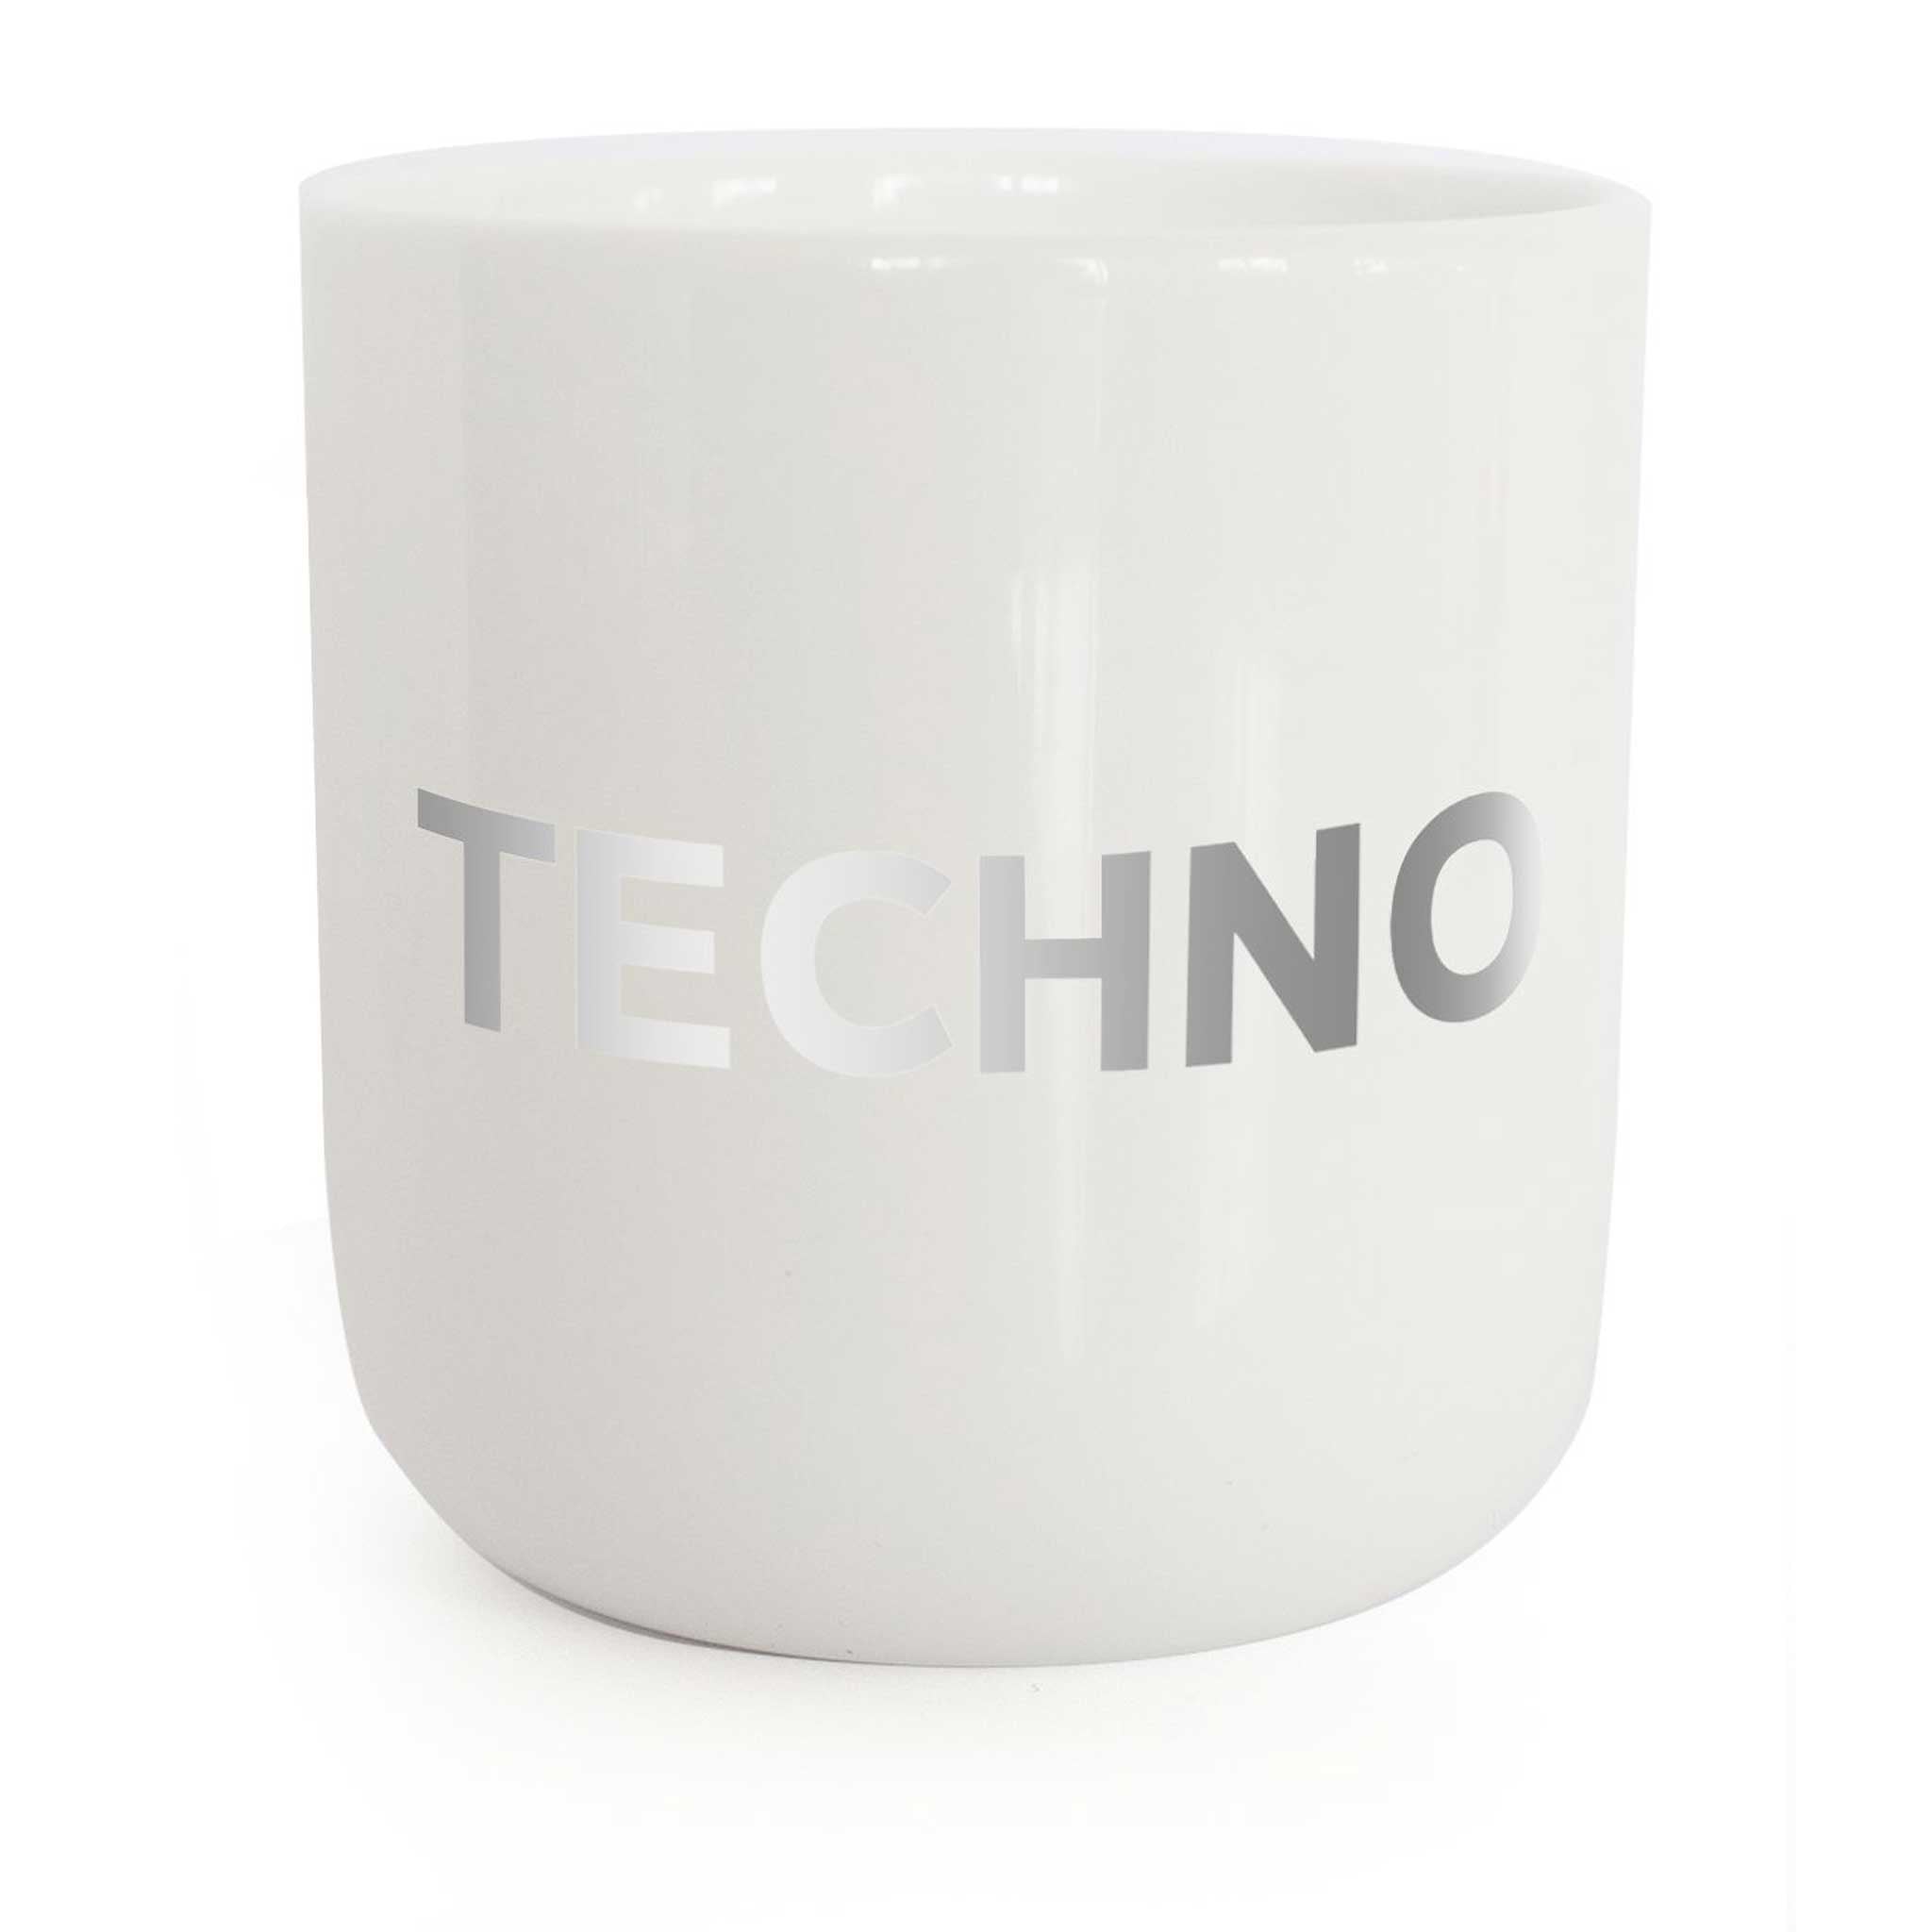 TECHNO | weisser Kaffee- & Tee-BECHER mit silberner Typo | Limited Edition Beat Serie | PLTY